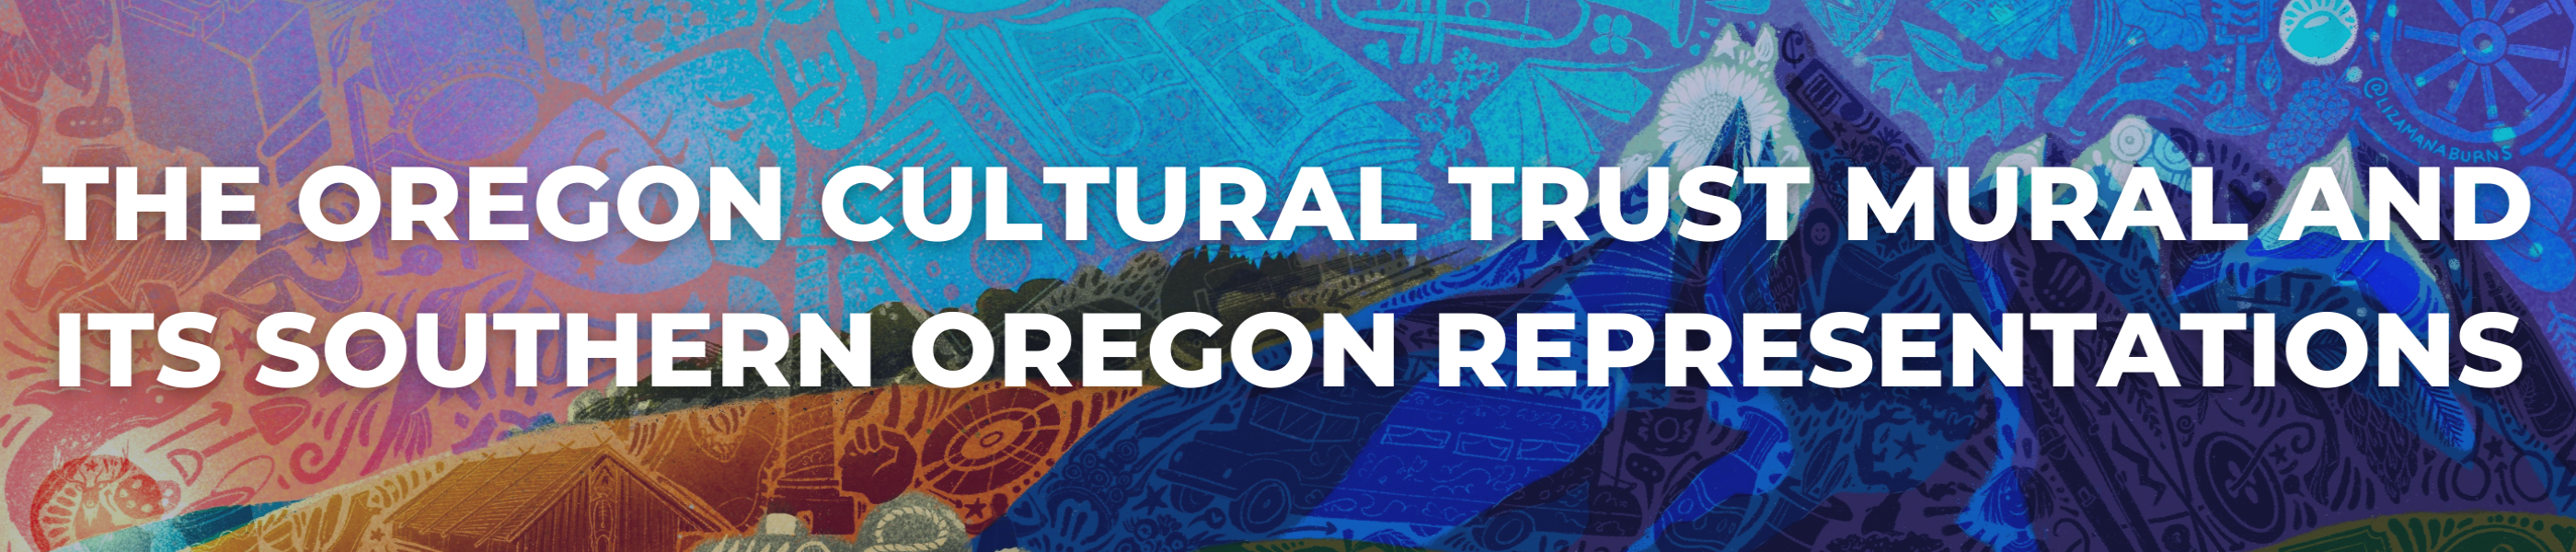 Celebrate Oregon! , Cultural trust mural, medford murals, airport mural, artistry, oregon cultural trust